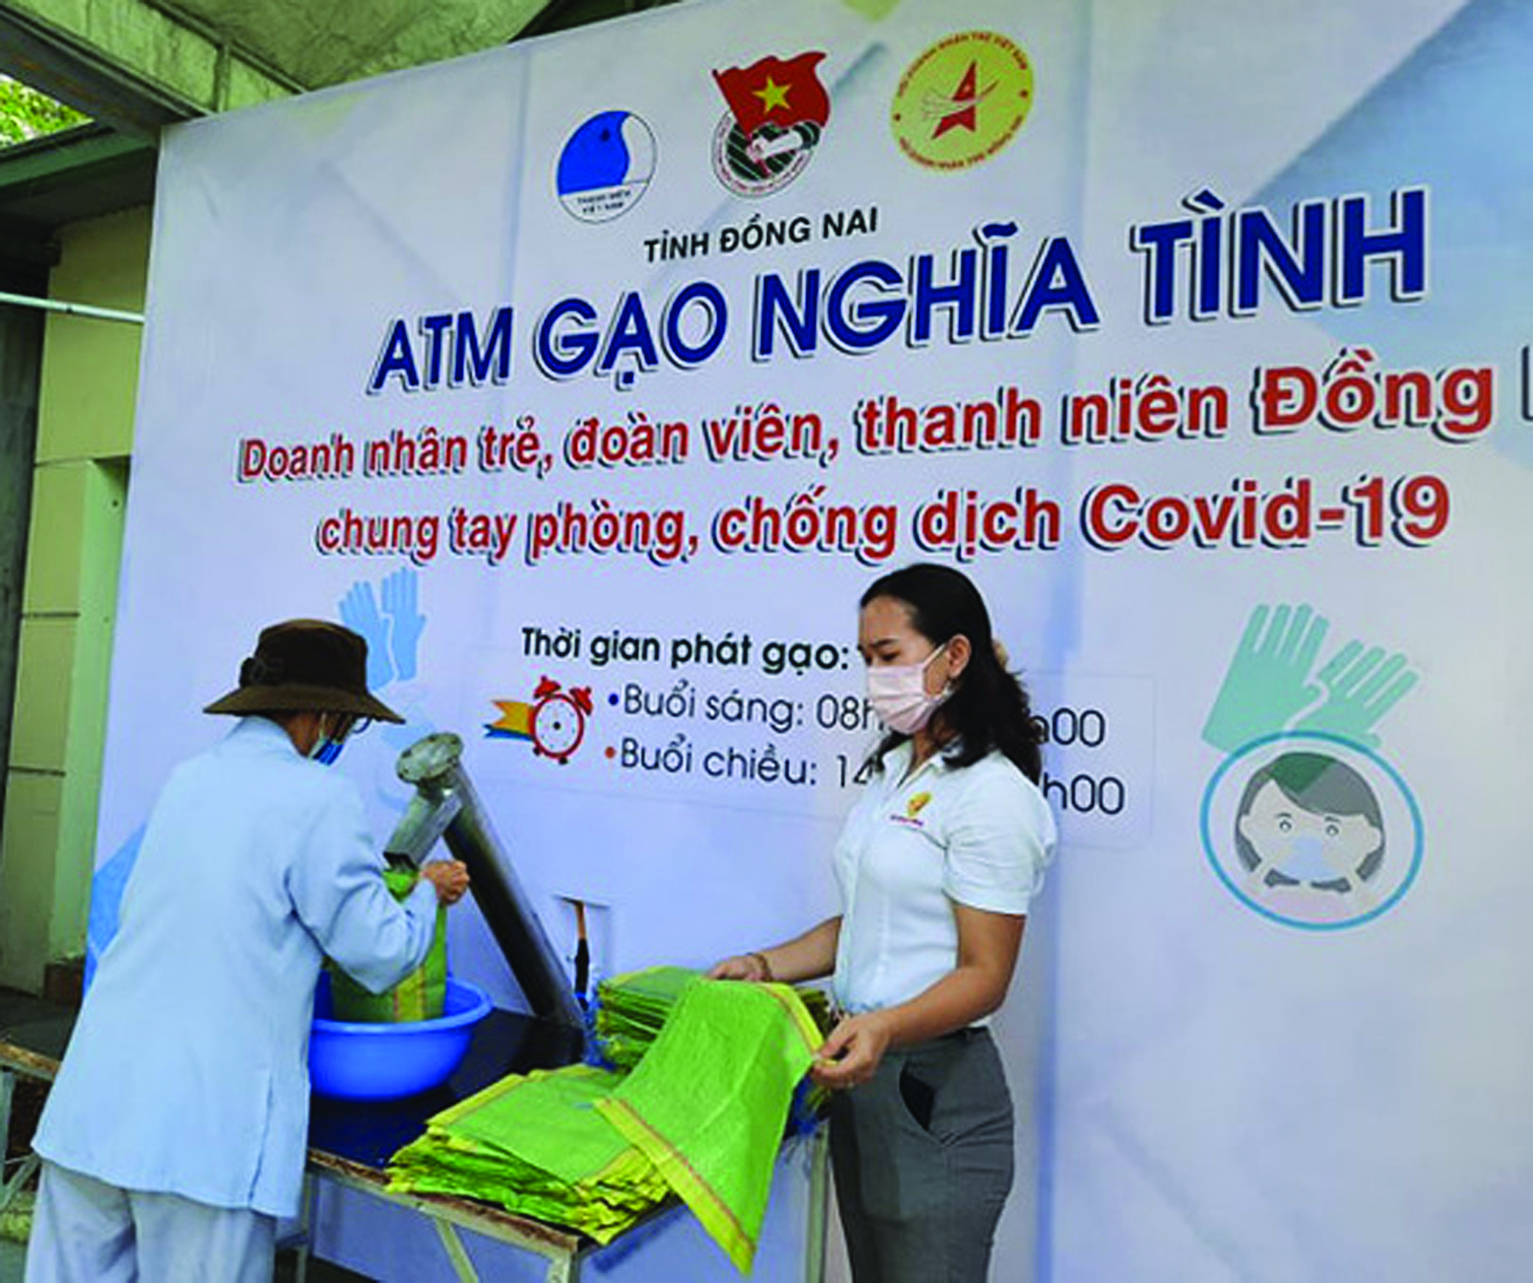  Chương trình ATM yêu thương của DNT Việt Nam đã giúp đỡ được nhiều hoàn cảnh khó khăn do dịch bệnh COVID-19. 